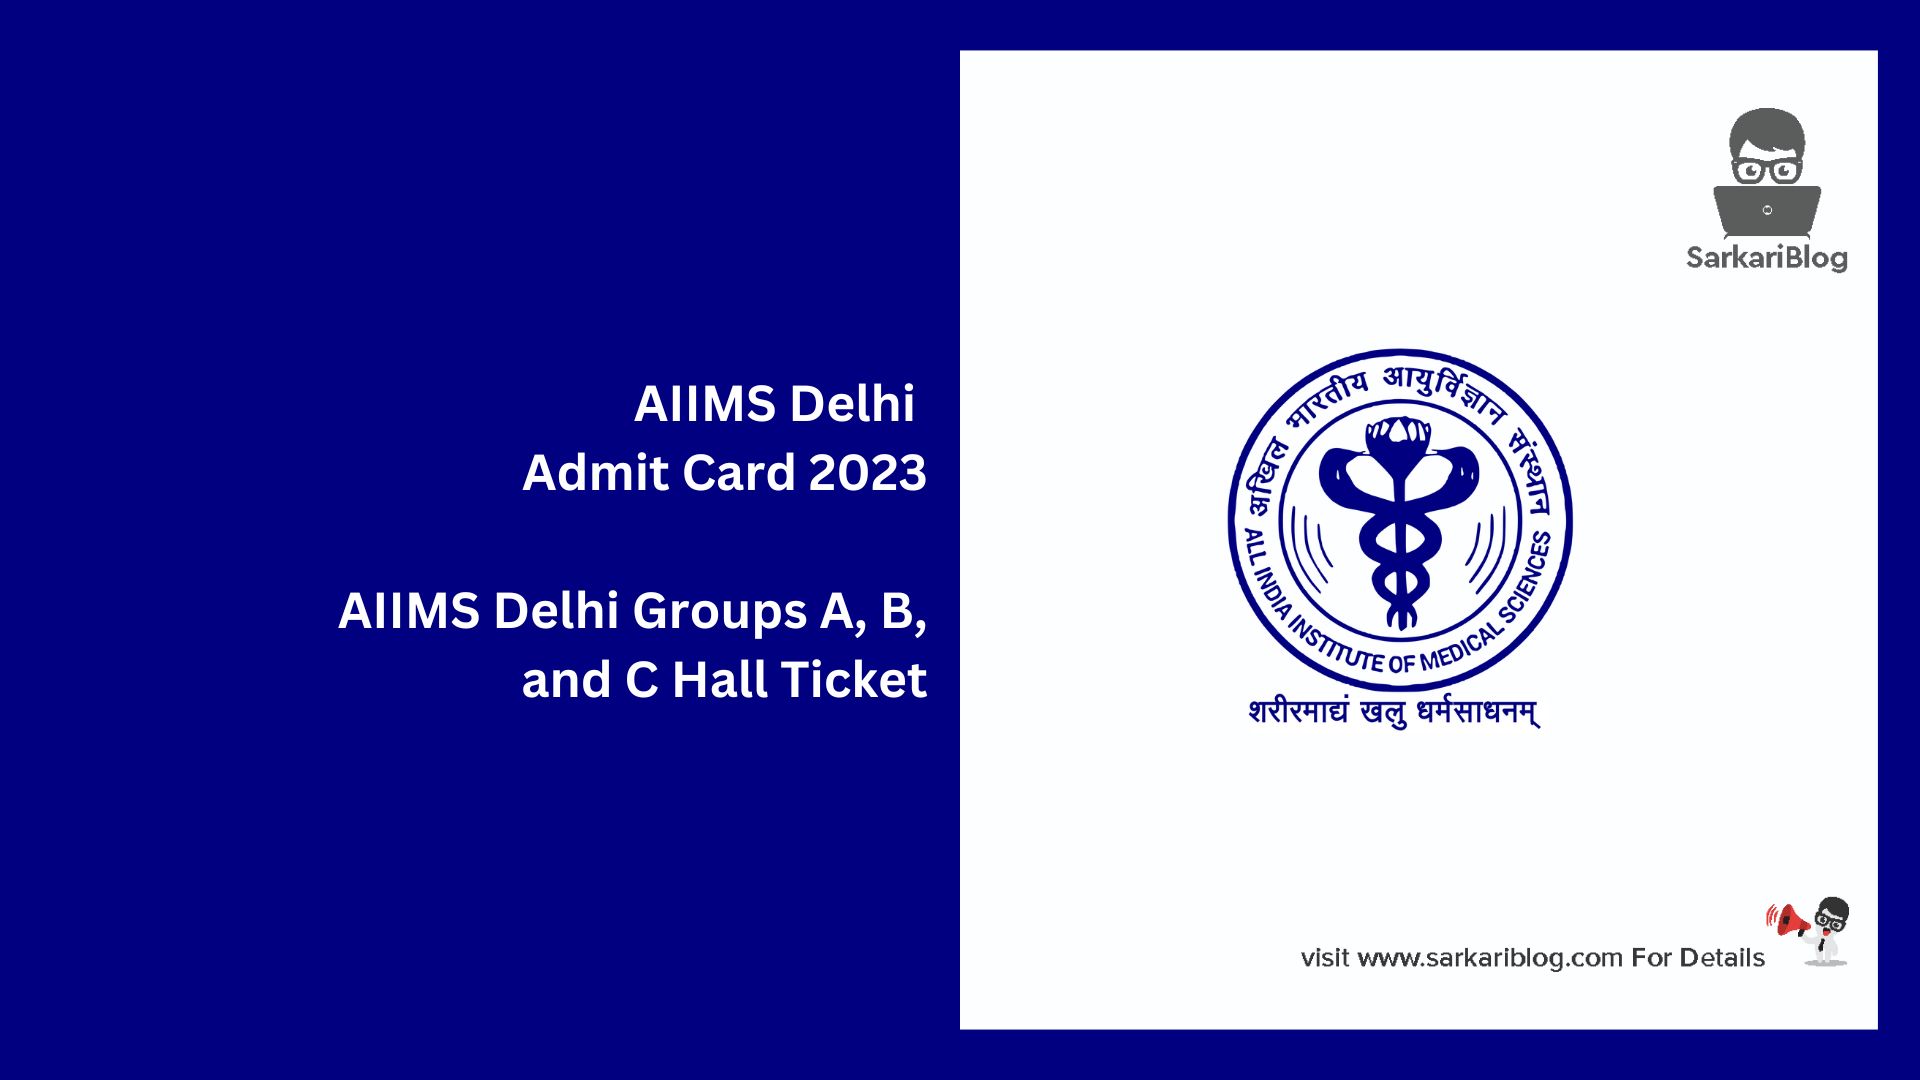 AIIMS Delhi Admit Card 2023